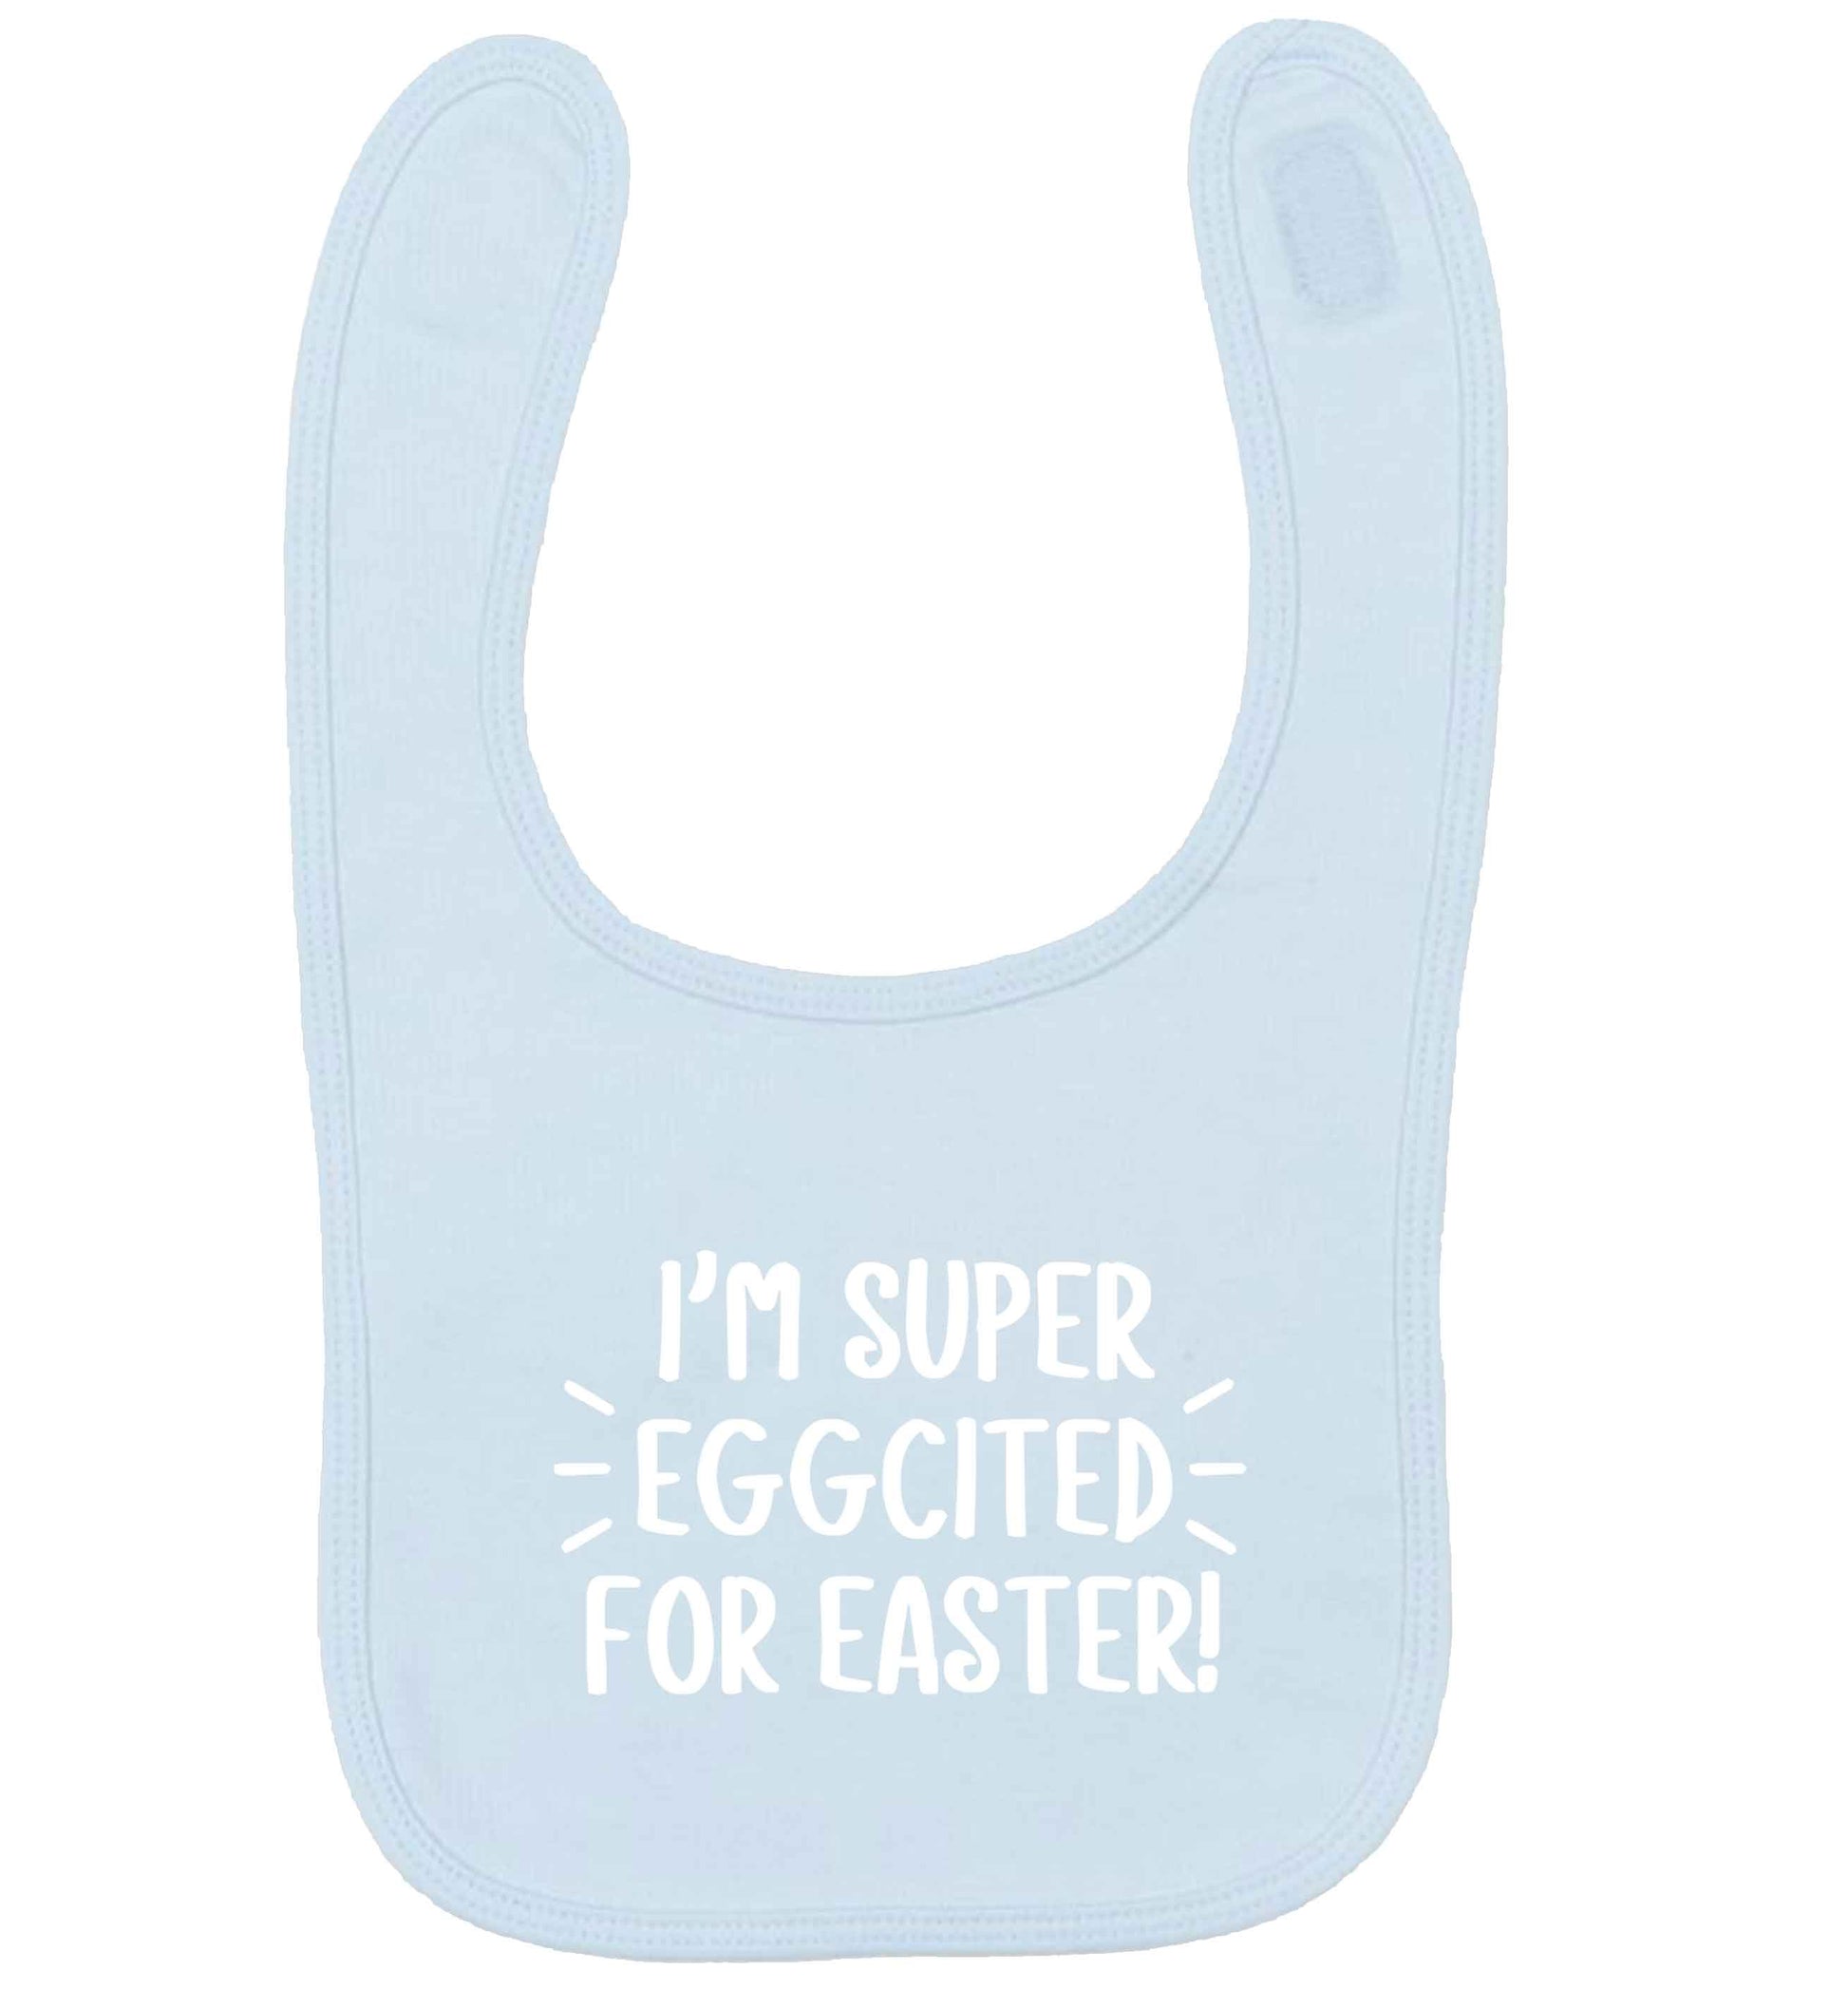 I'm super eggcited for Easter pale blue baby bib